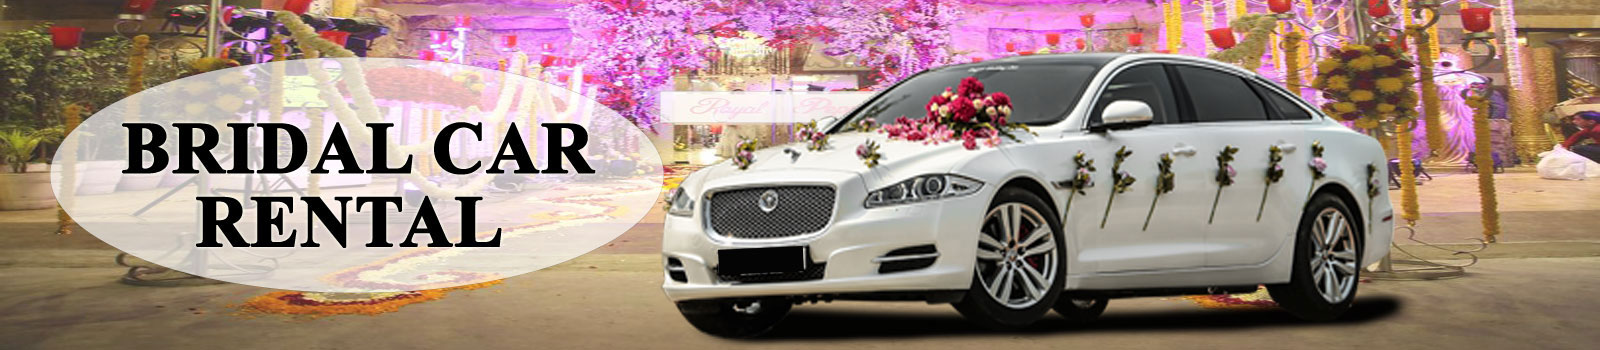 bridal car rental